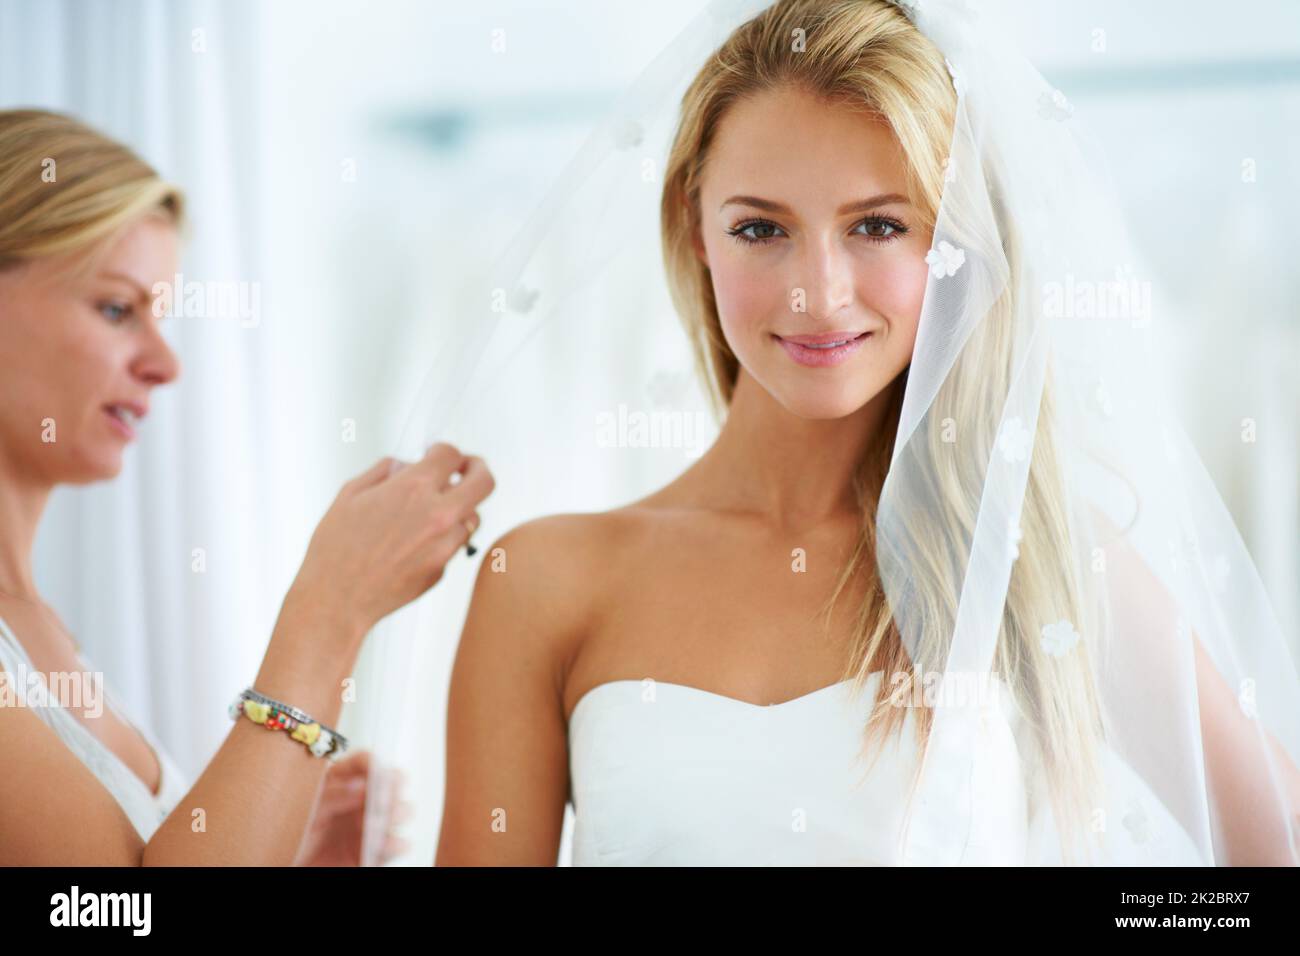 Den letzten Schliff geben. Eine junge Frau, die in einer Brautkleider-Boutique Brautkleider anprobiert. Stockfoto